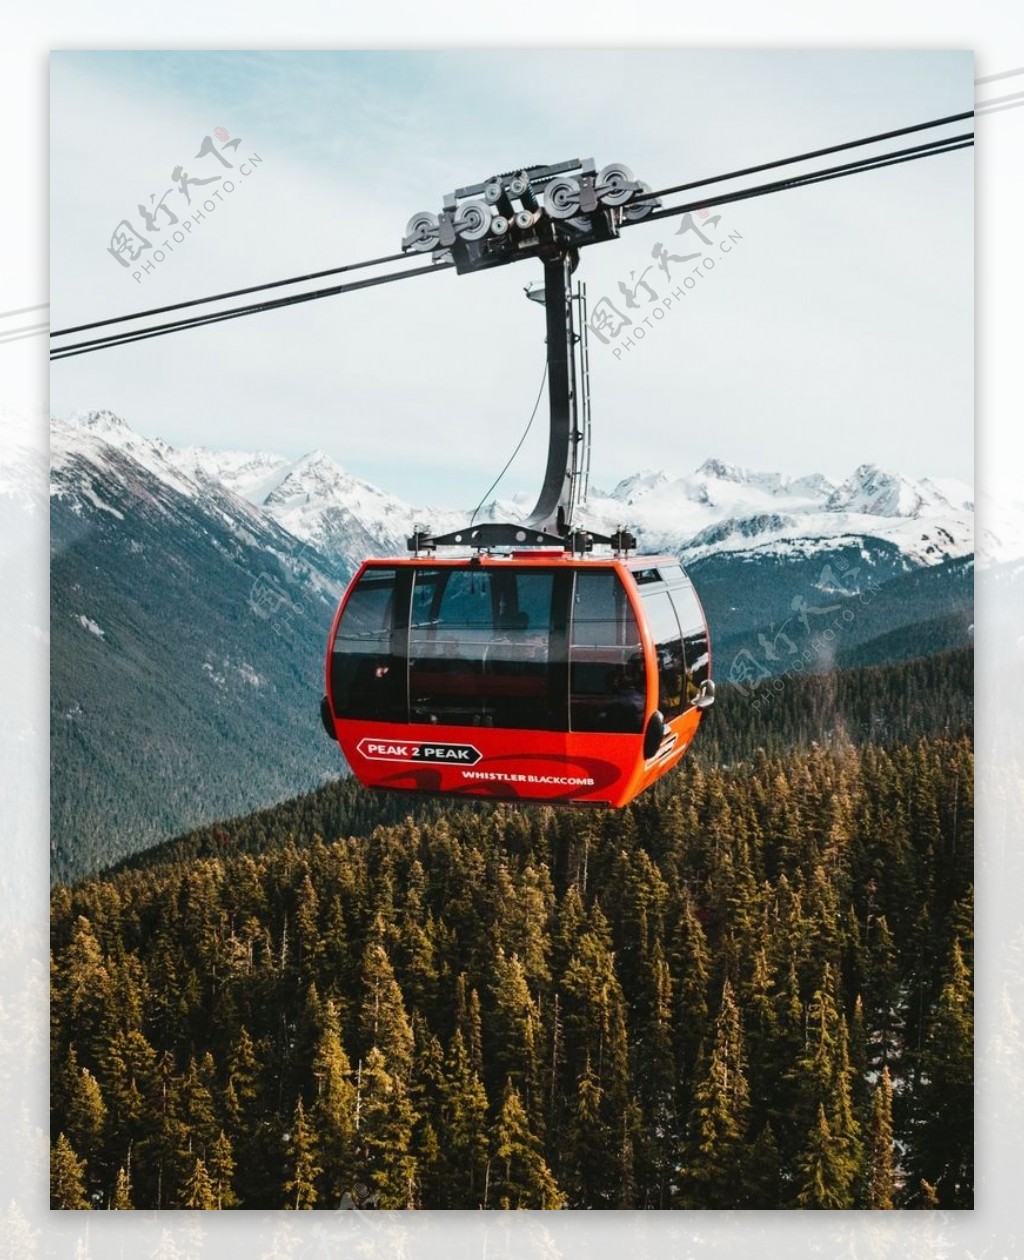 高清晰阿尔卑斯山滑雪圣地缆车壁纸下载